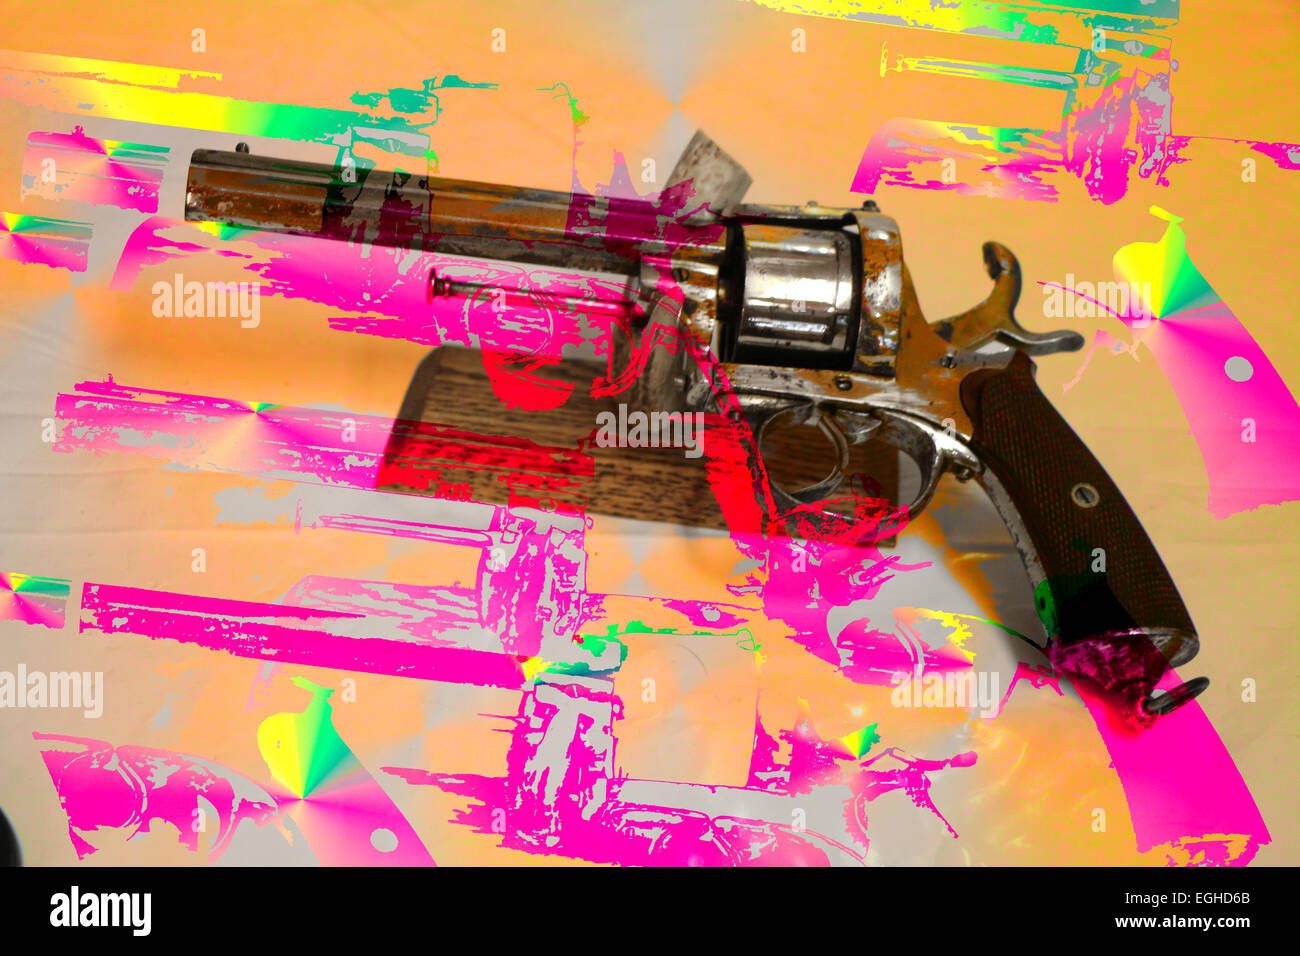 Dettagli architettonici pistole di sfondo di close-up di immagine a colori digitale crepuscolo composito featured pistole pistola orizzontale viola di fumare Foto Stock